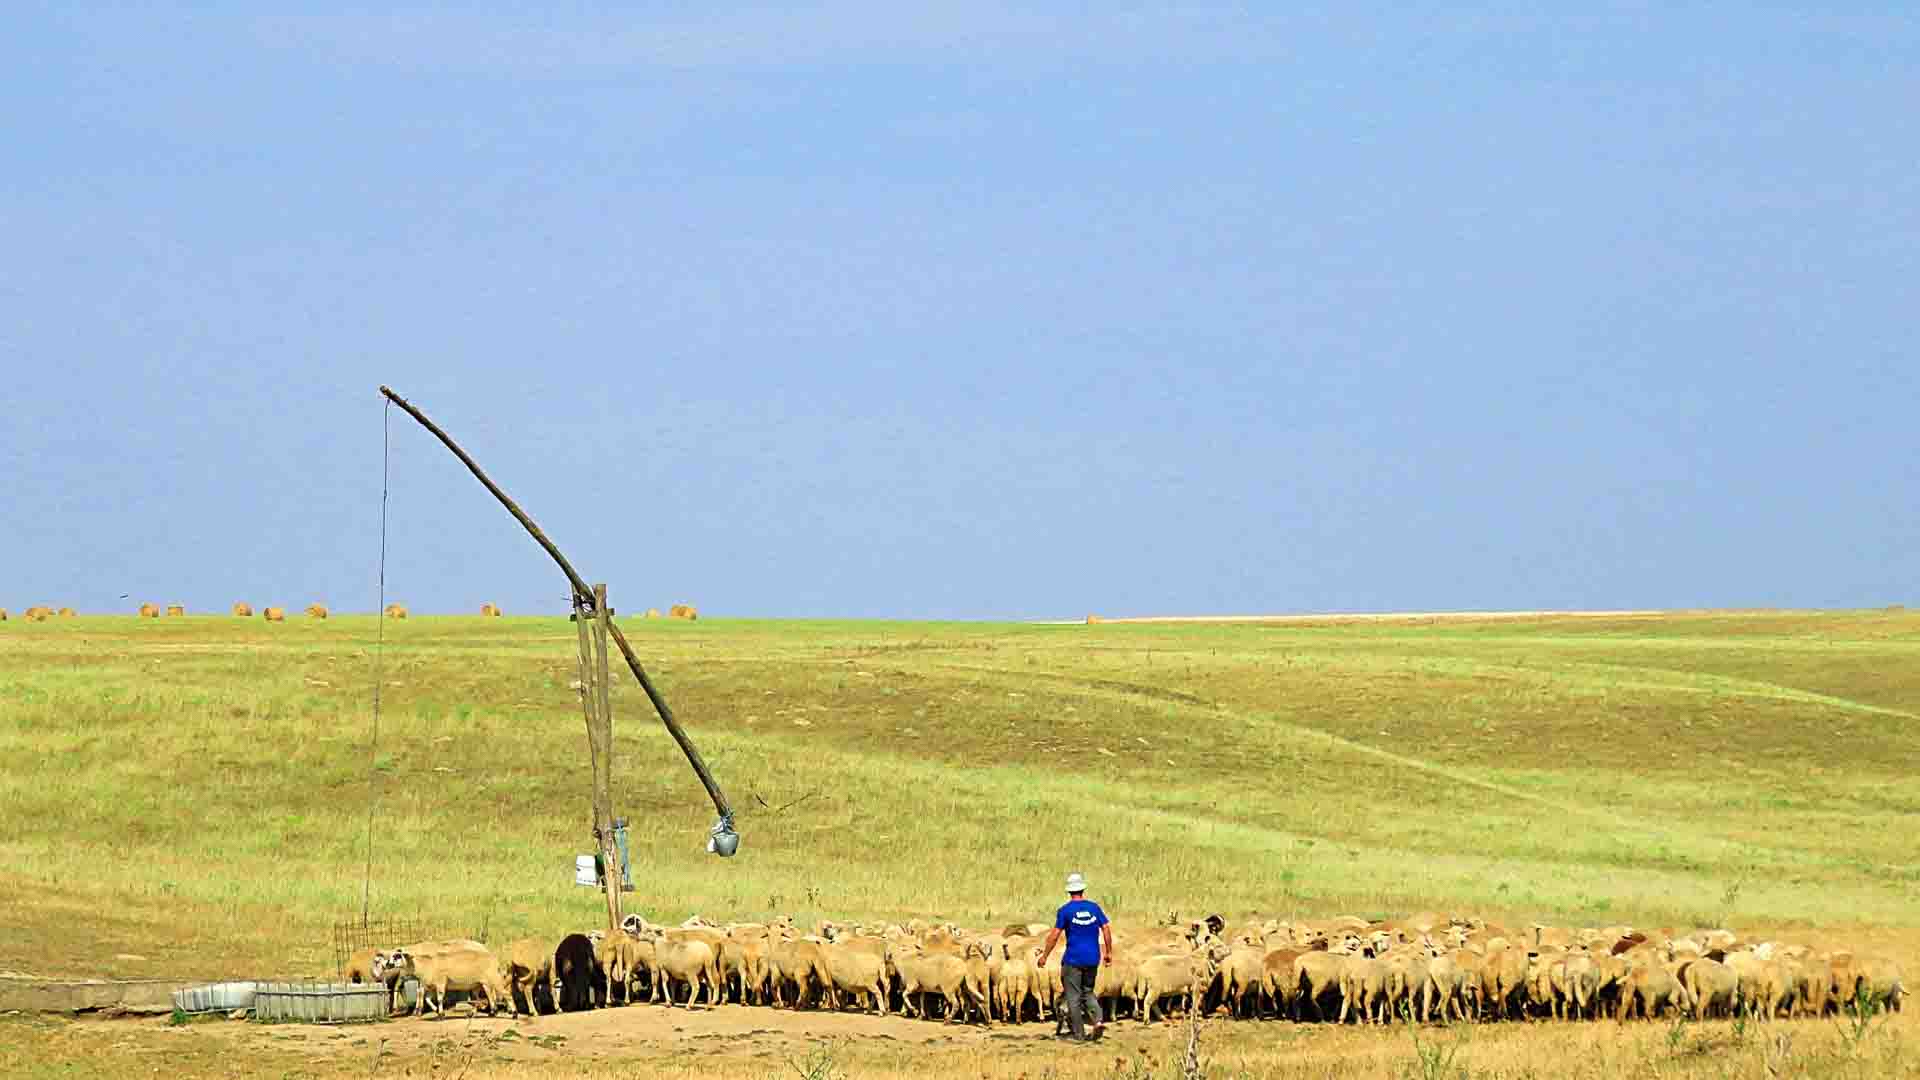 Sheep in a field in Romania